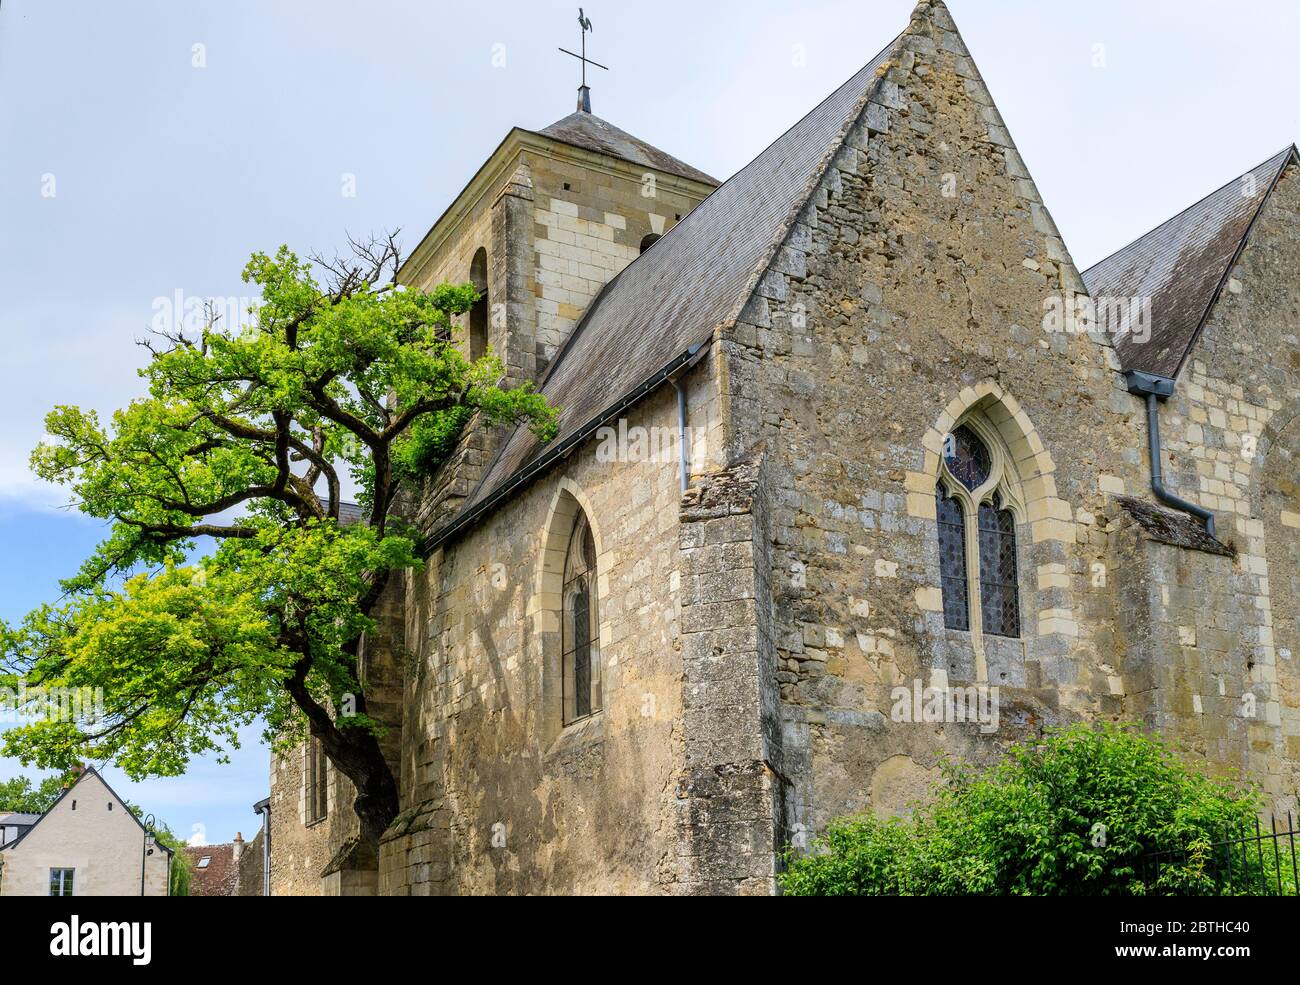 France, Indre et Loire, Chelle, vieux chêne (Quercus) classé arbre remarquable de France par l'association A.R.B.R.E.S. poussant dans le mur de Saint Didier ch Banque D'Images